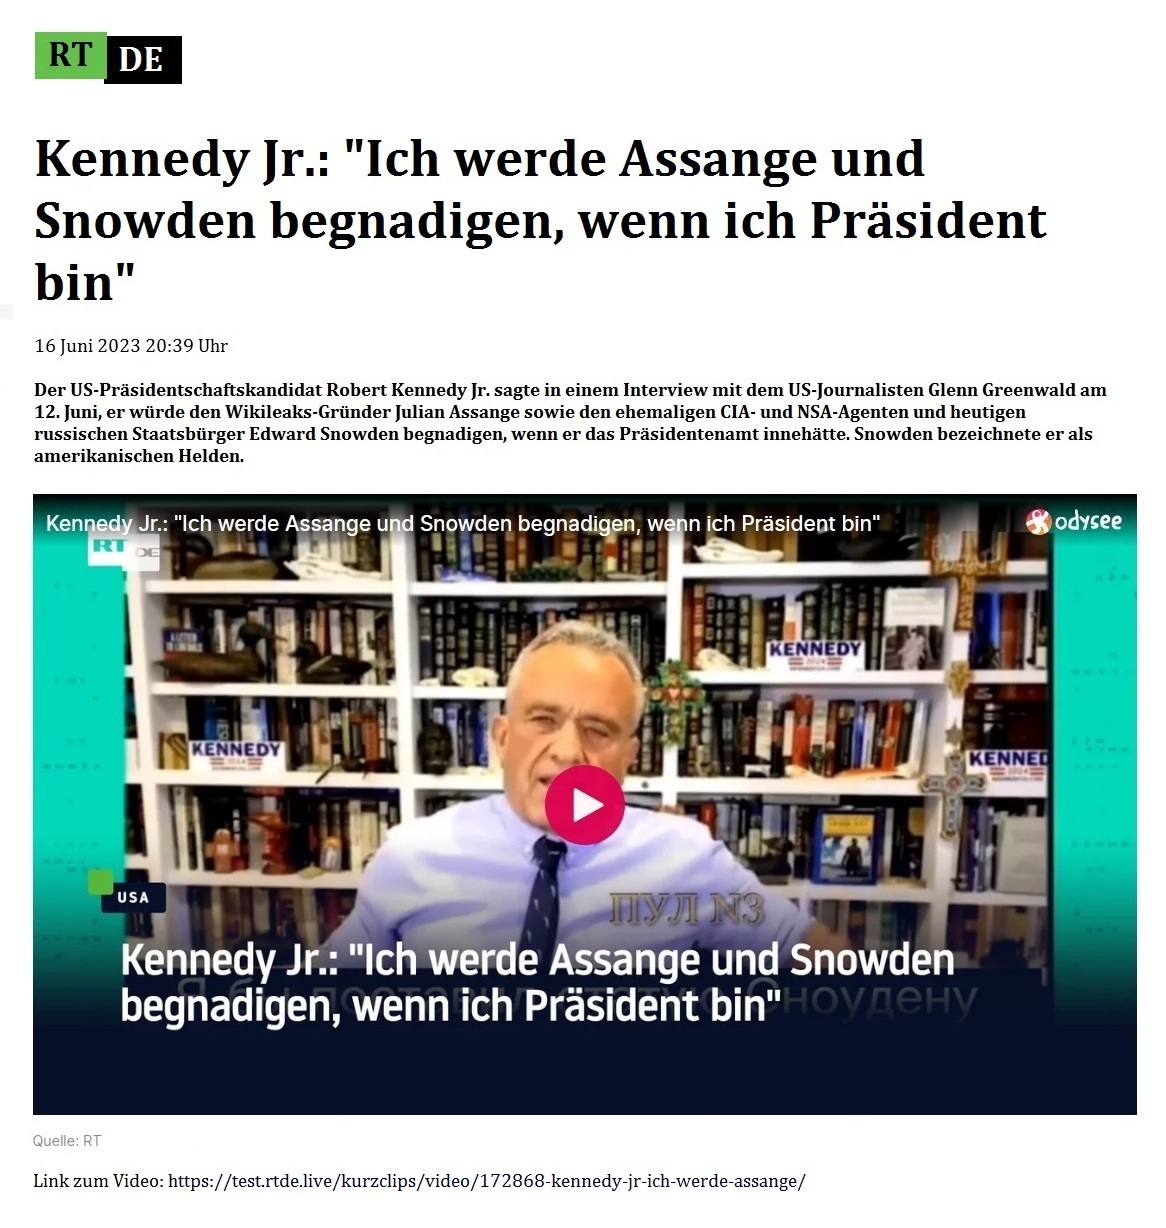 Kennedy Jr.: 'Ich werde Assange und Snowden begnadigen, wenn ich Prsident bin' - 16 Juni 2023 20:39 Uhr - Der US-Prsidentschaftskandidat Robert Kennedy Jr. sagte in einem Interview mit dem US-Journalisten Glenn Greenwald am 12. Juni, er wrde den Wikileaks-Grnder Julian Assange sowie den ehemaligen CIA- und NSA-Agenten und heutigen russischen Staatsbrger Edward Snowden begnadigen, wenn er das Prsidentenamt innehtte. Snowden bezeichnete er als amerikanischen Helden. - 16 Juni 2023 20:39 Uhr - RT DE - Link zum Video: https://test.rtde.live/kurzclips/video/172868-kennedy-jr-ich-werde-assange/